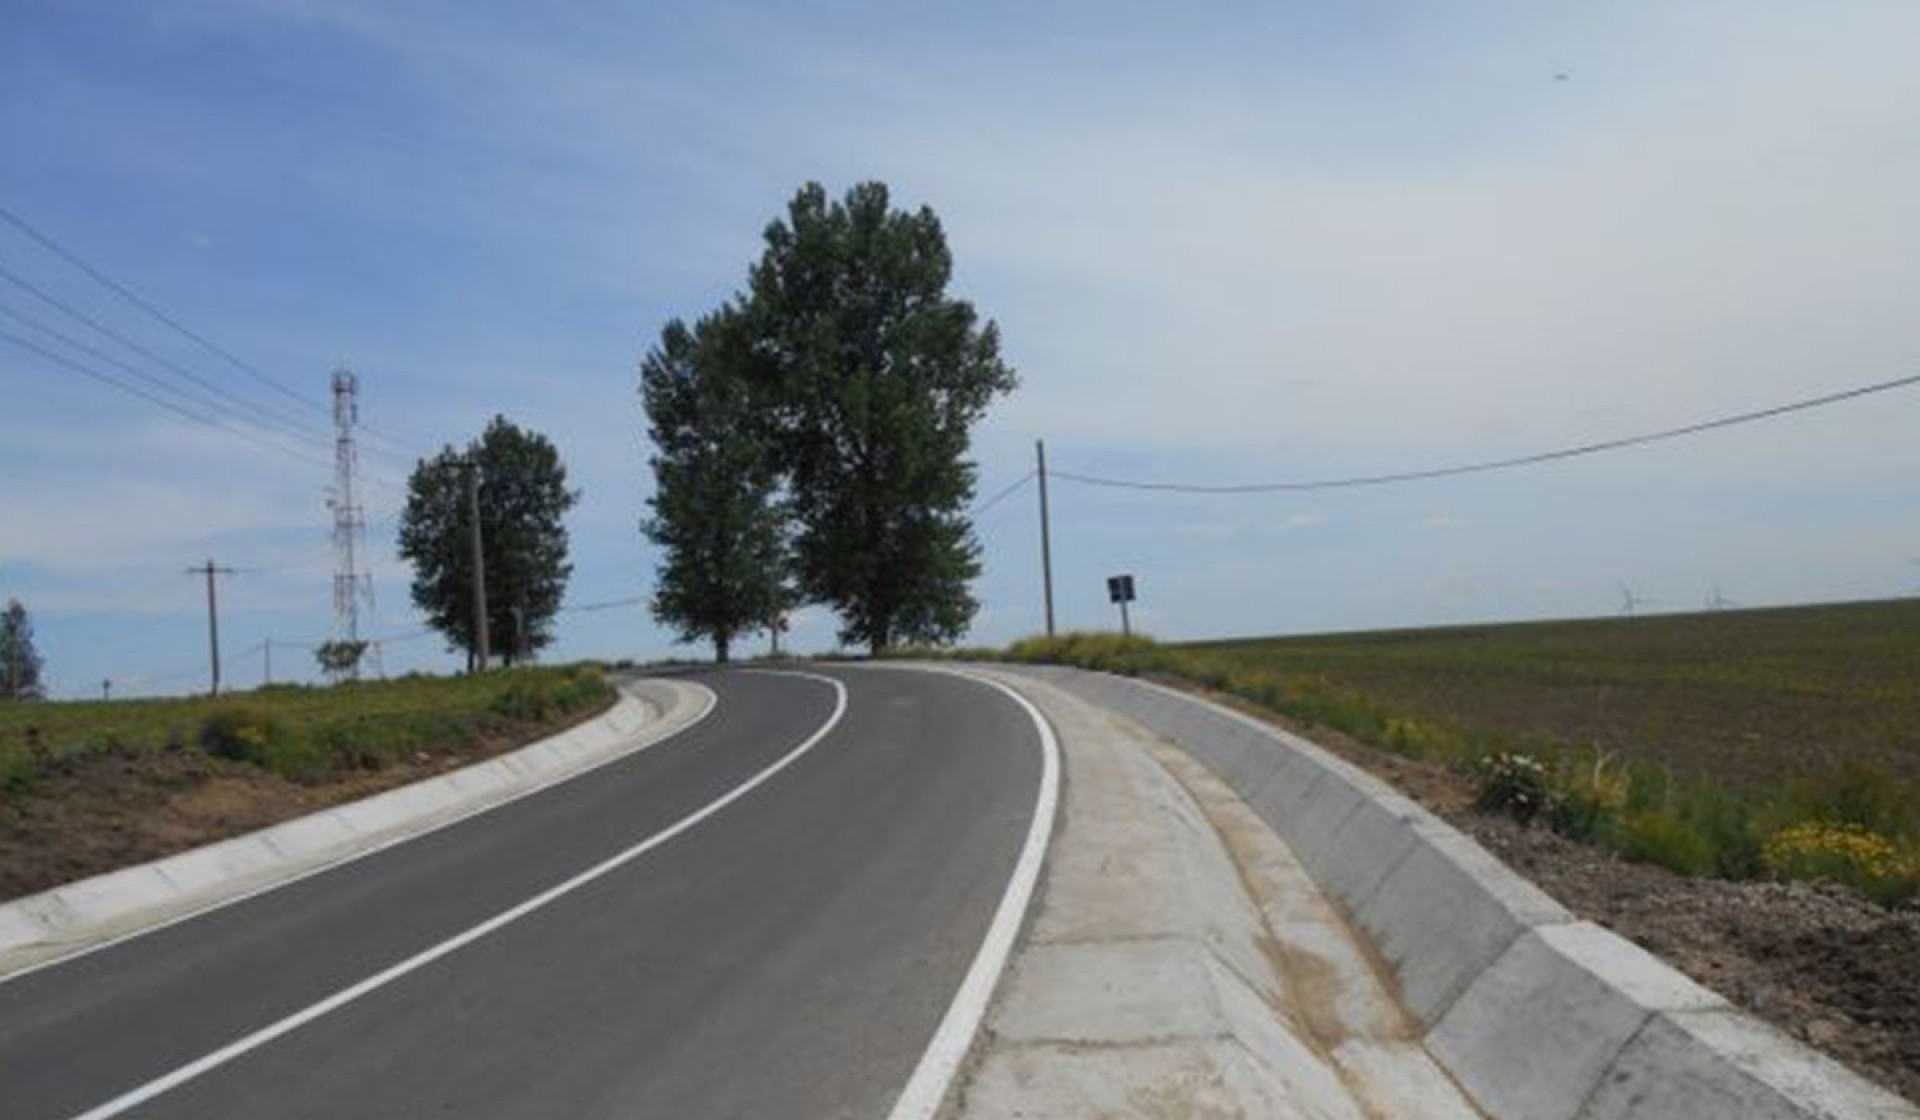 Cinci oferte pentru proiectarea și execuția drumului expres Brăila - Galați